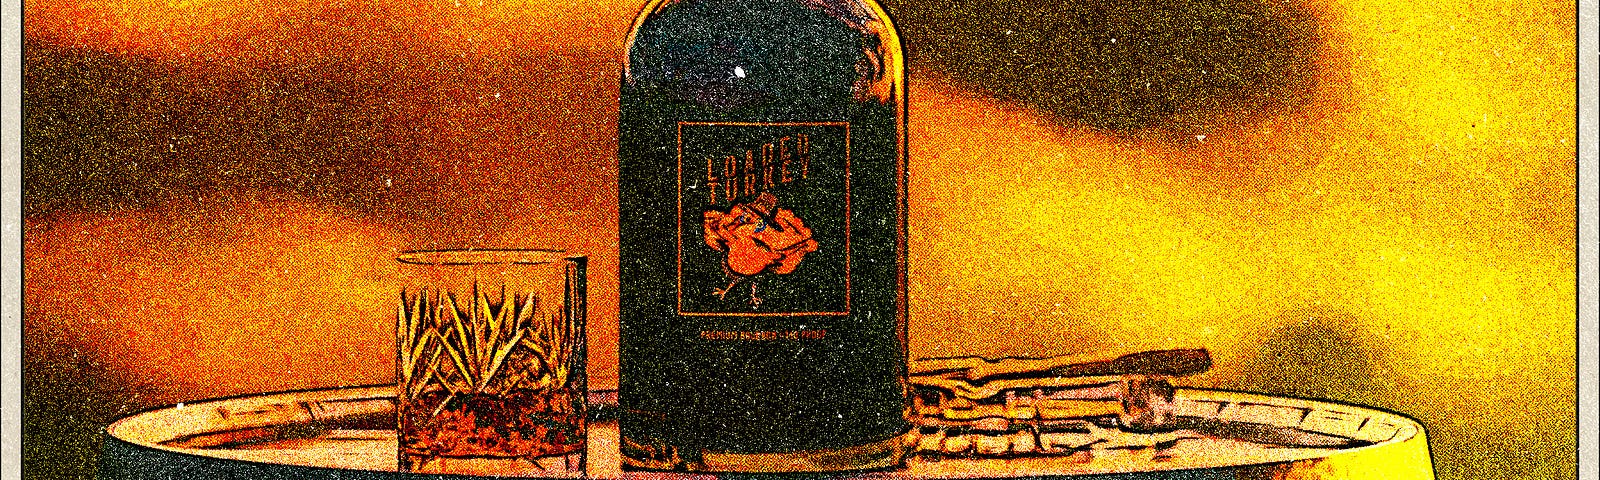 Whiskey with drunken turkey label